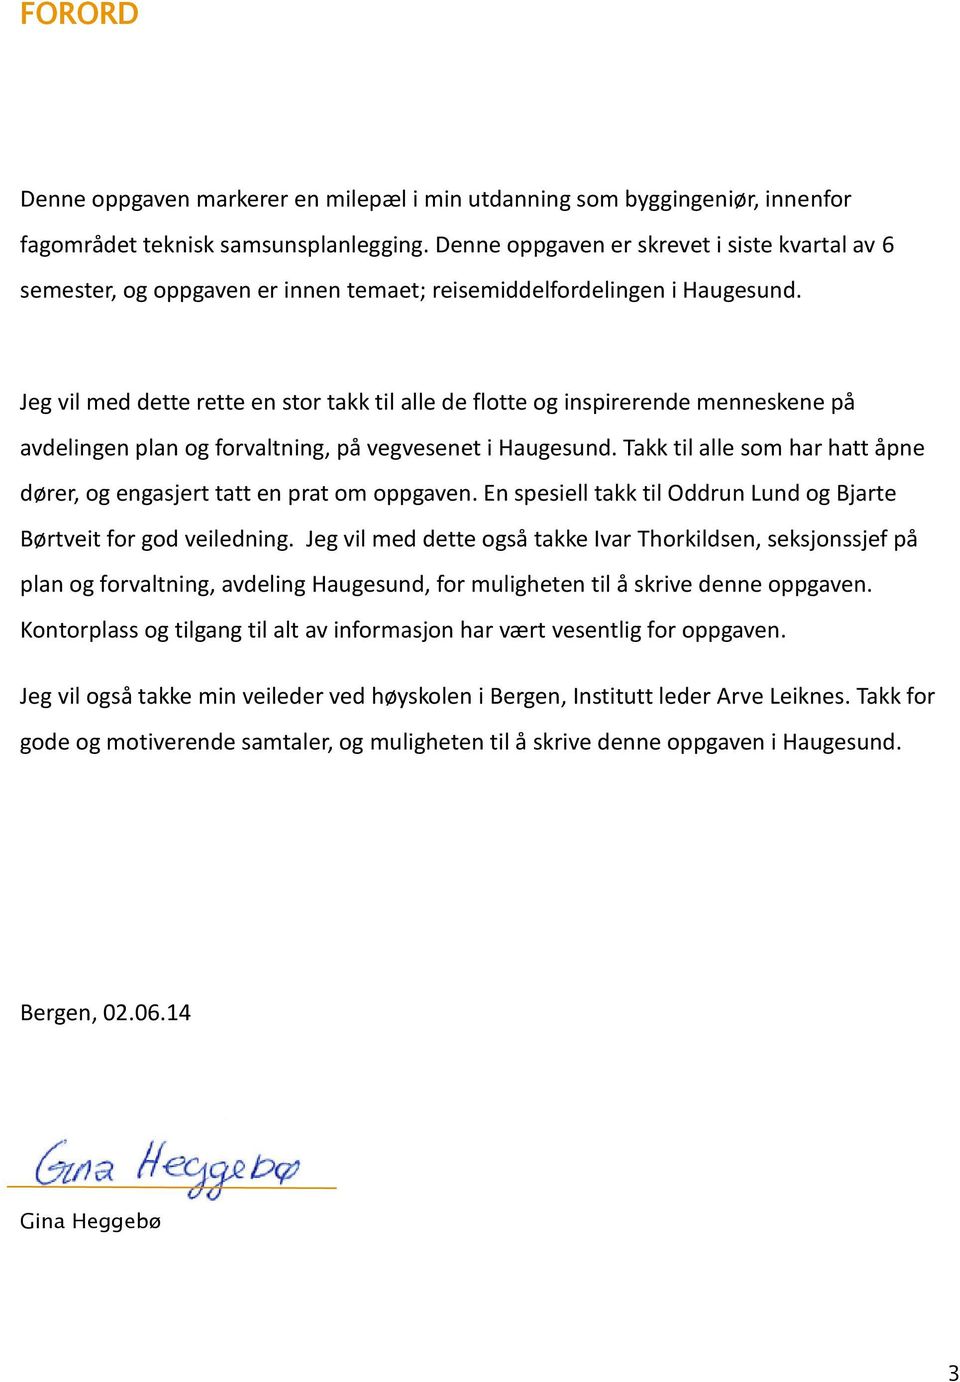 Jeg vil med dette rette en stor takk til alle de flotte og inspirerende menneskene på avdelingen plan og forvaltning, på vegvesenet i Haugesund.